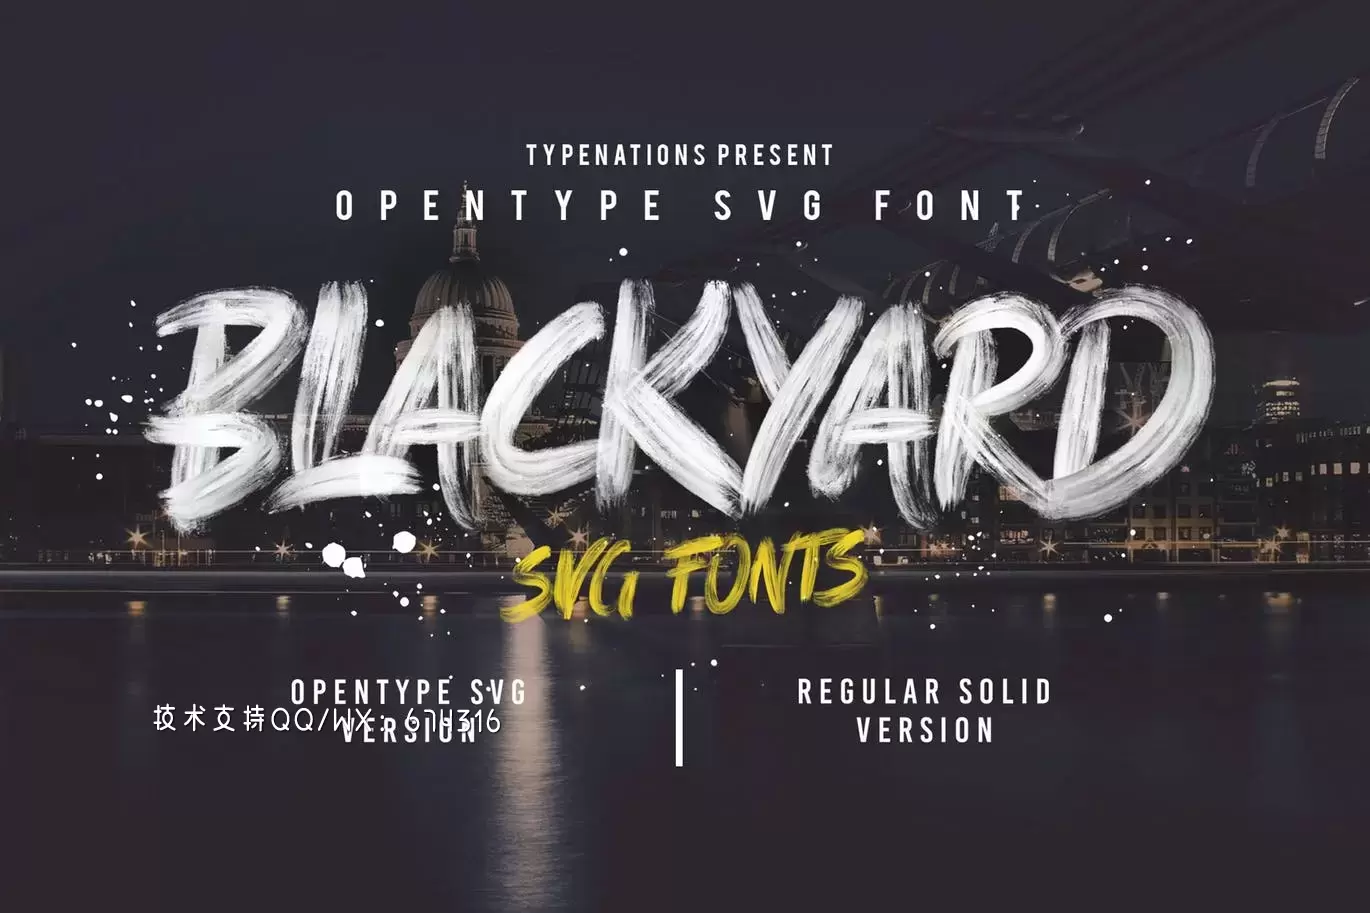 时尚高端手绘书法字体Blackyard SVG和常规字体（Psd分层文件）免费下载